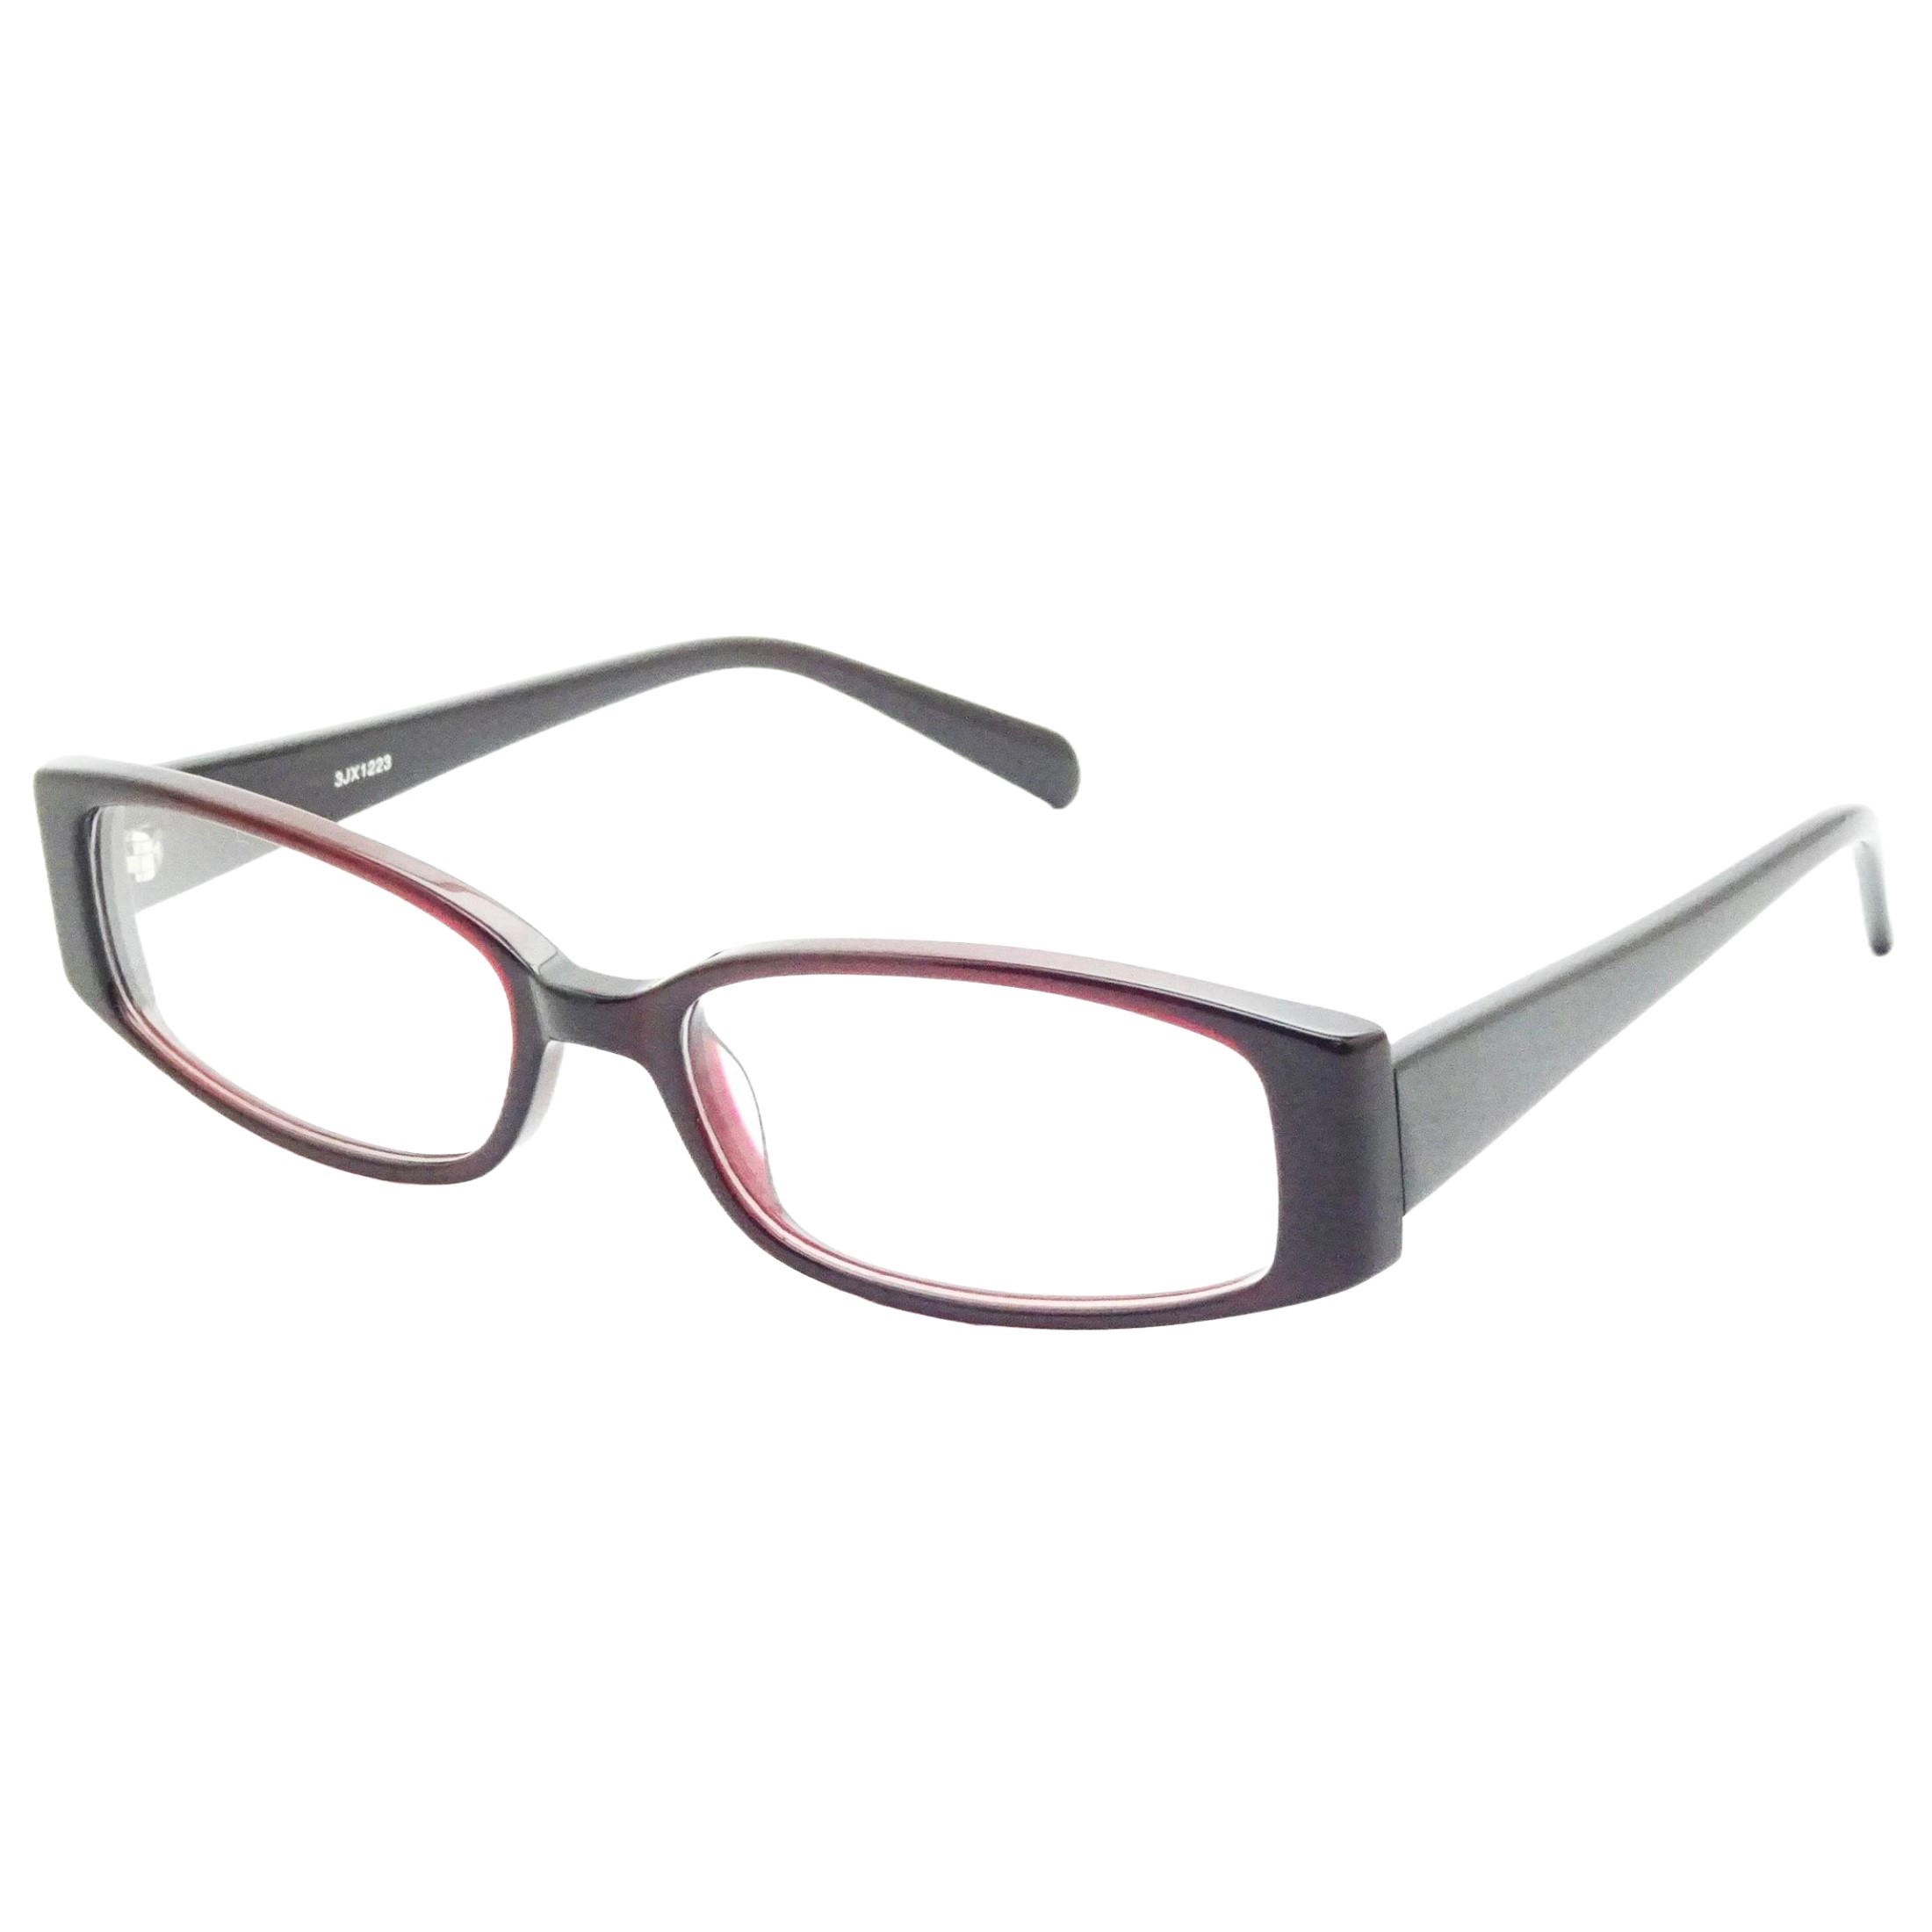 Contour Women's Rx'able Eyeglasses, FM14057 Burg. - image 4 of 6